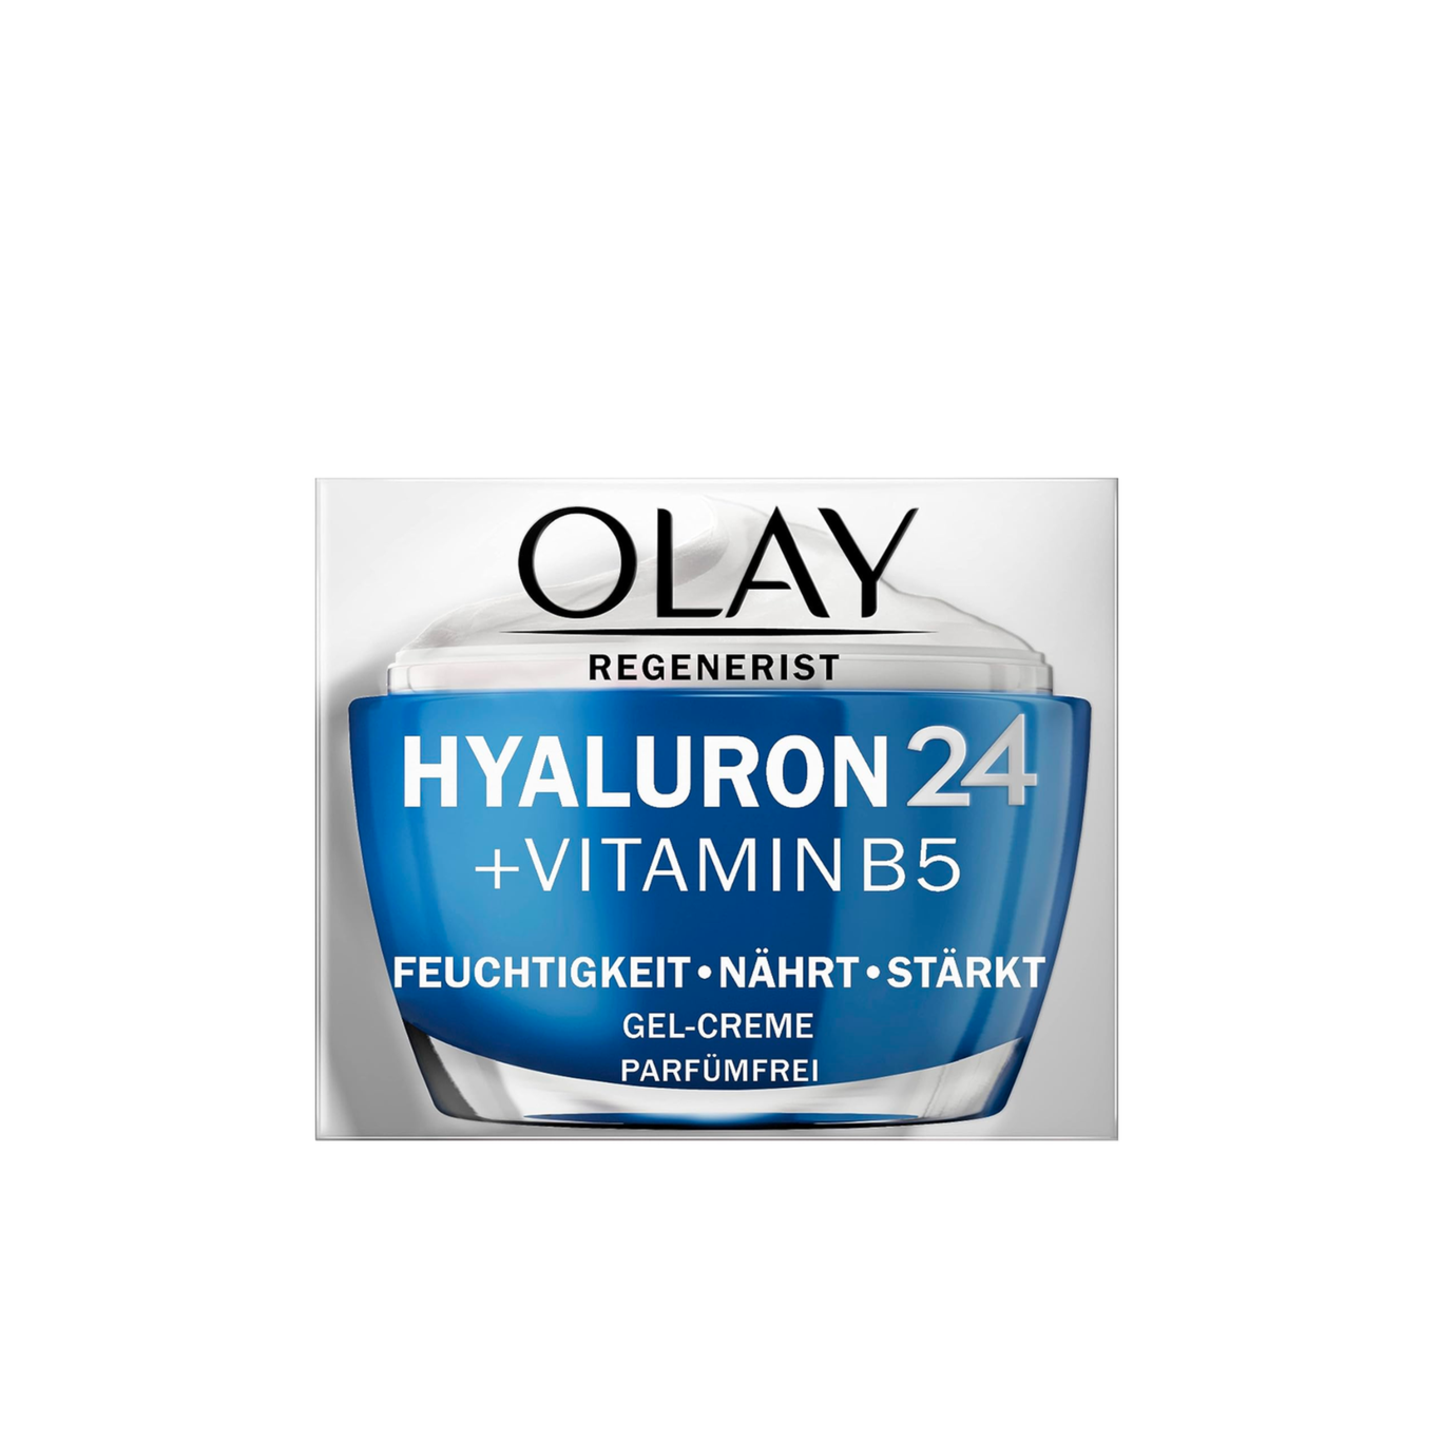 After Sun Hyaluron24 + Vitamin B5 Feuchtigkeitscreme von Olay,